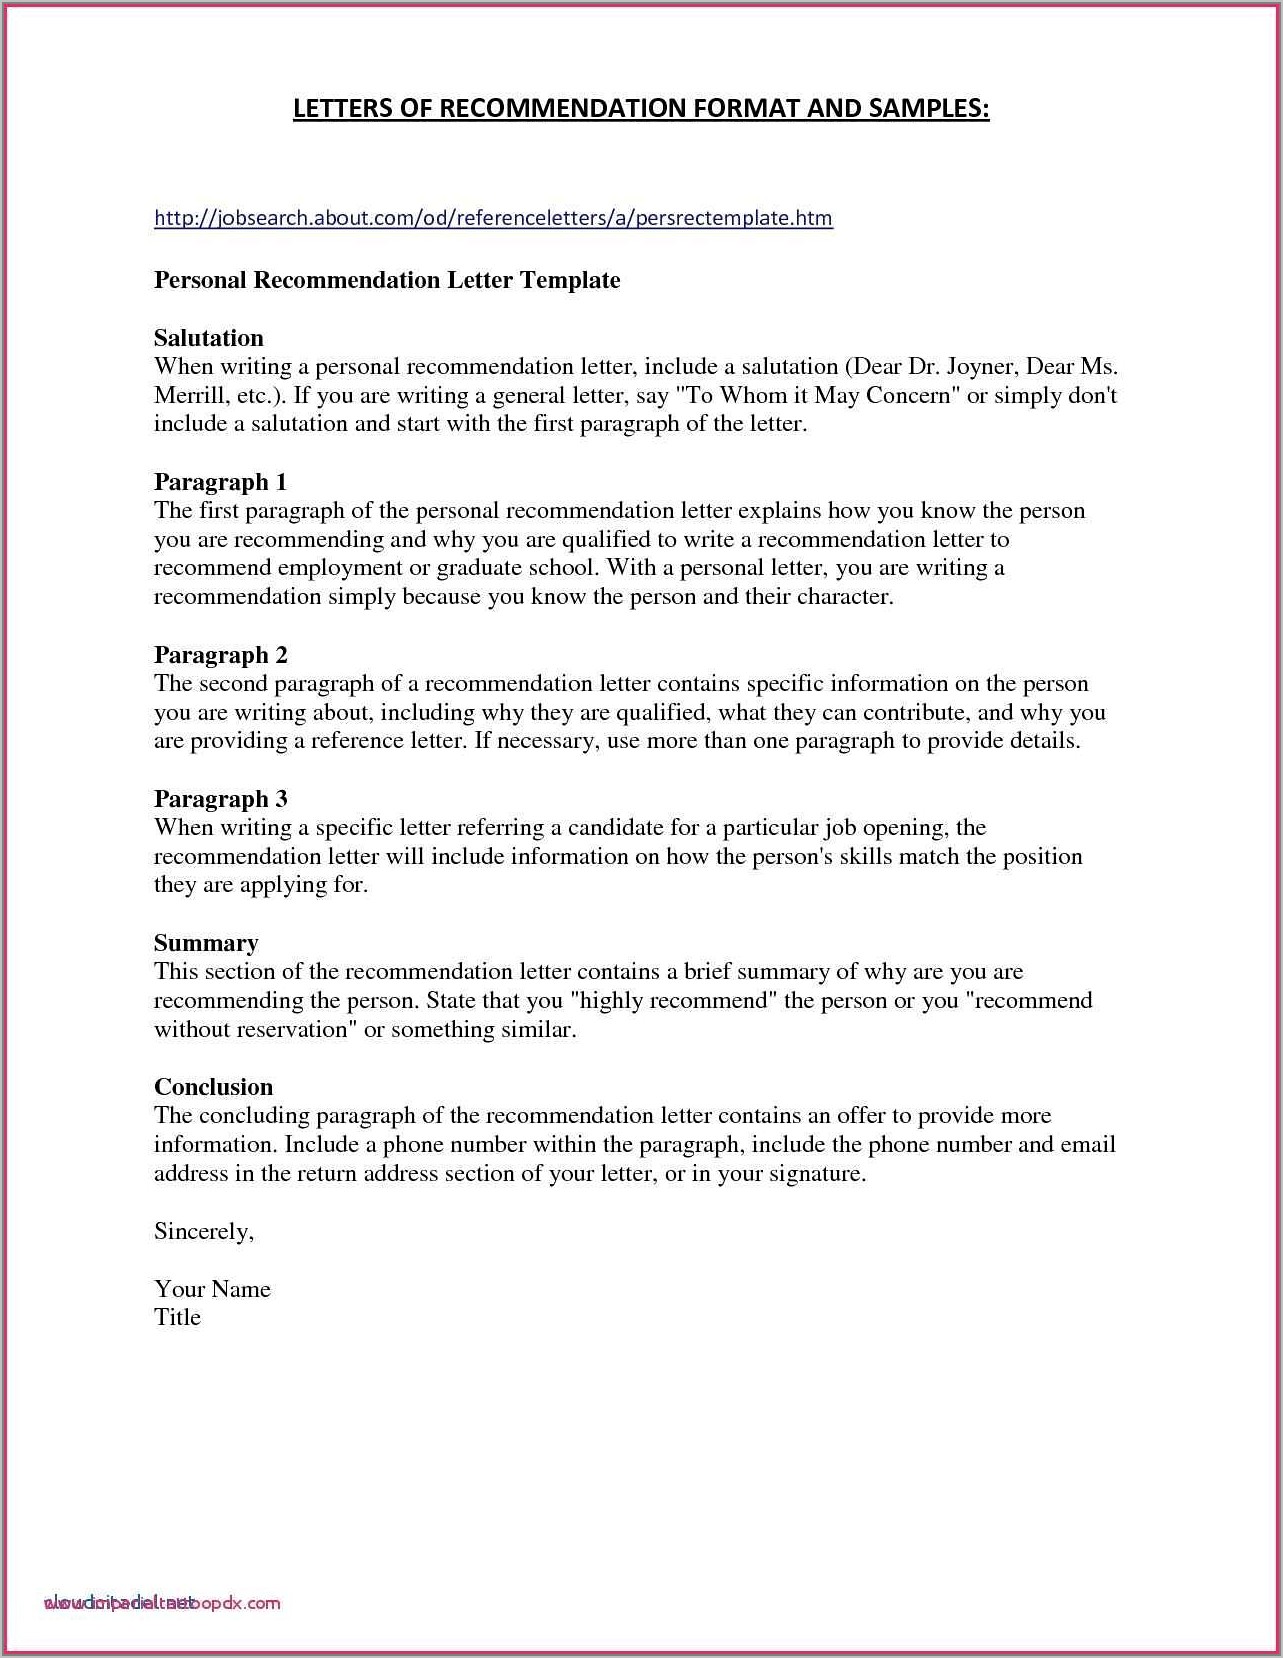 Sample Resume For Registered Nurse Position